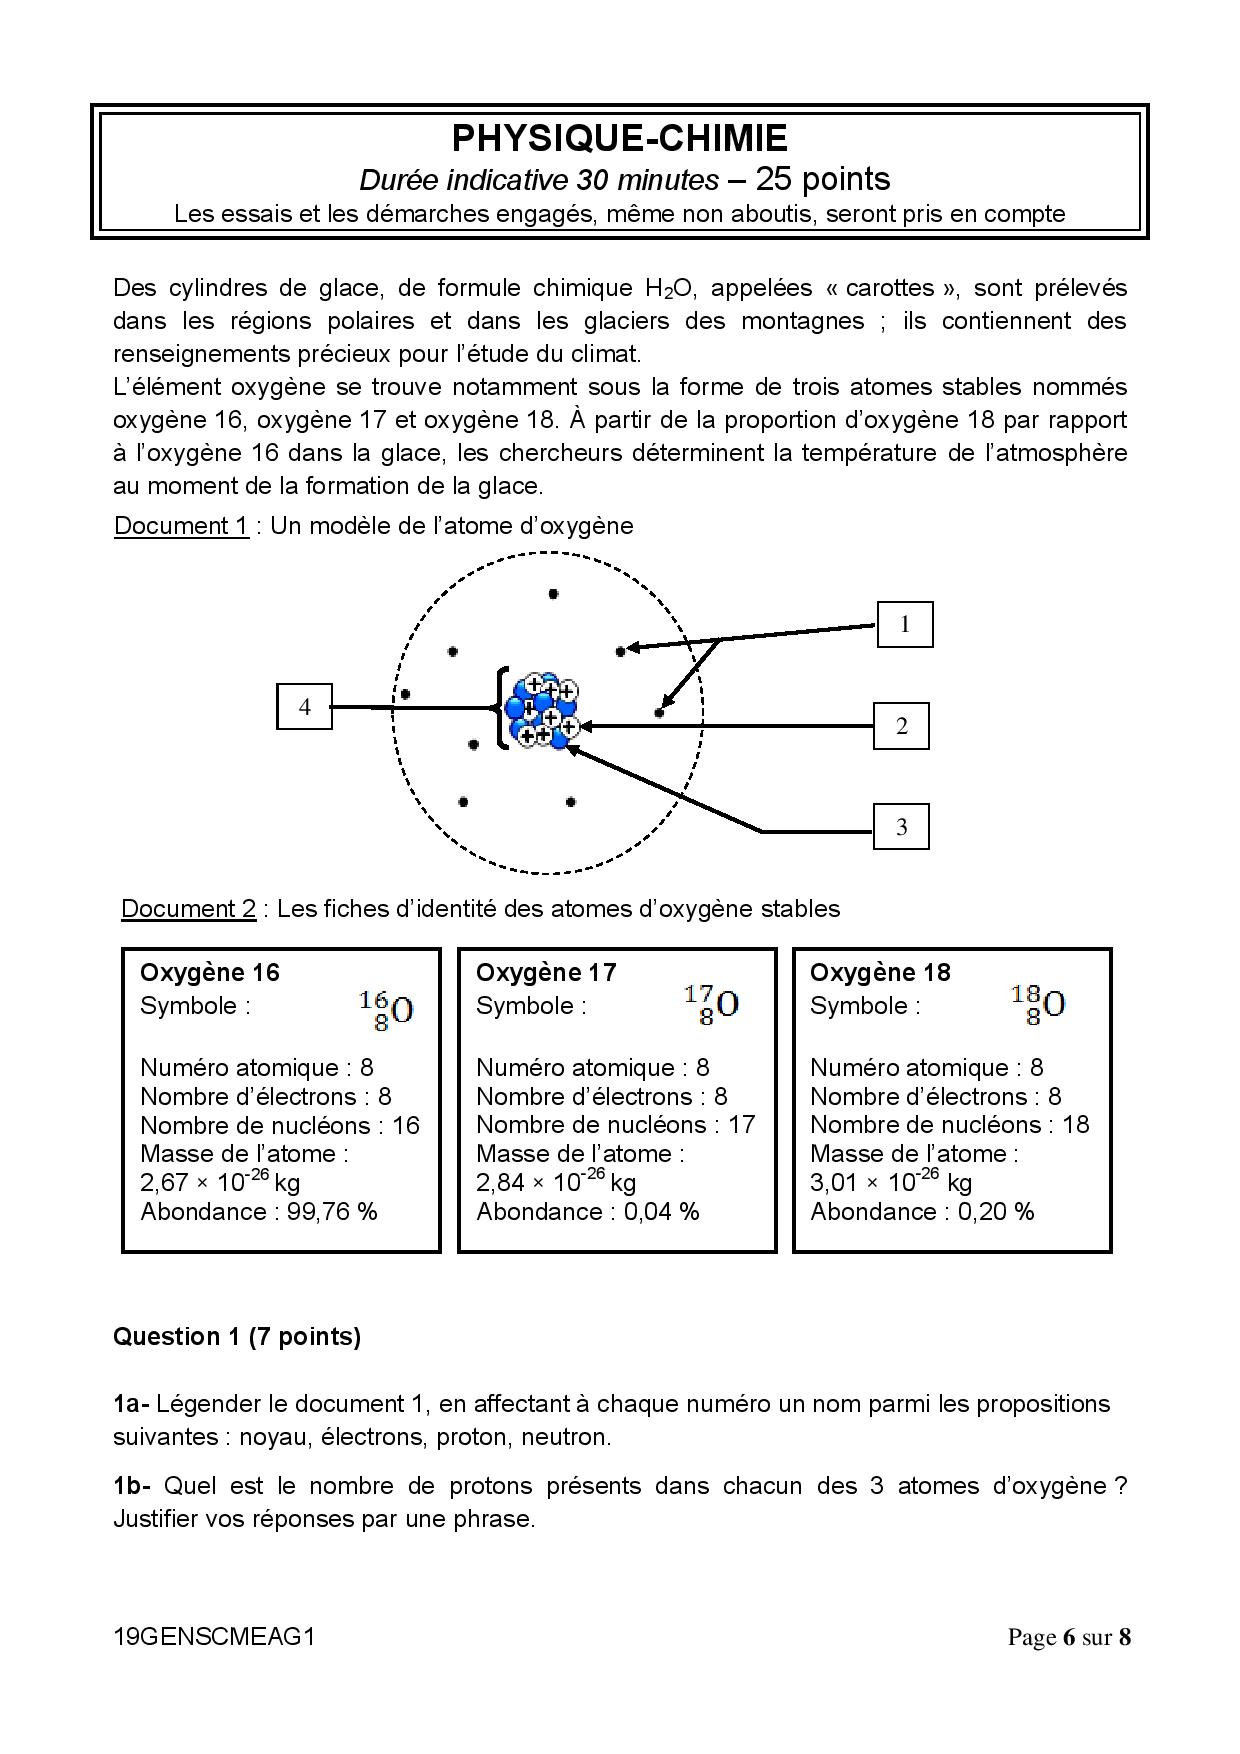 Exercice Type Brevet Maths Avec Corrigé Corrigé brevet 2019 physique chimie - Atomes d'oxygène